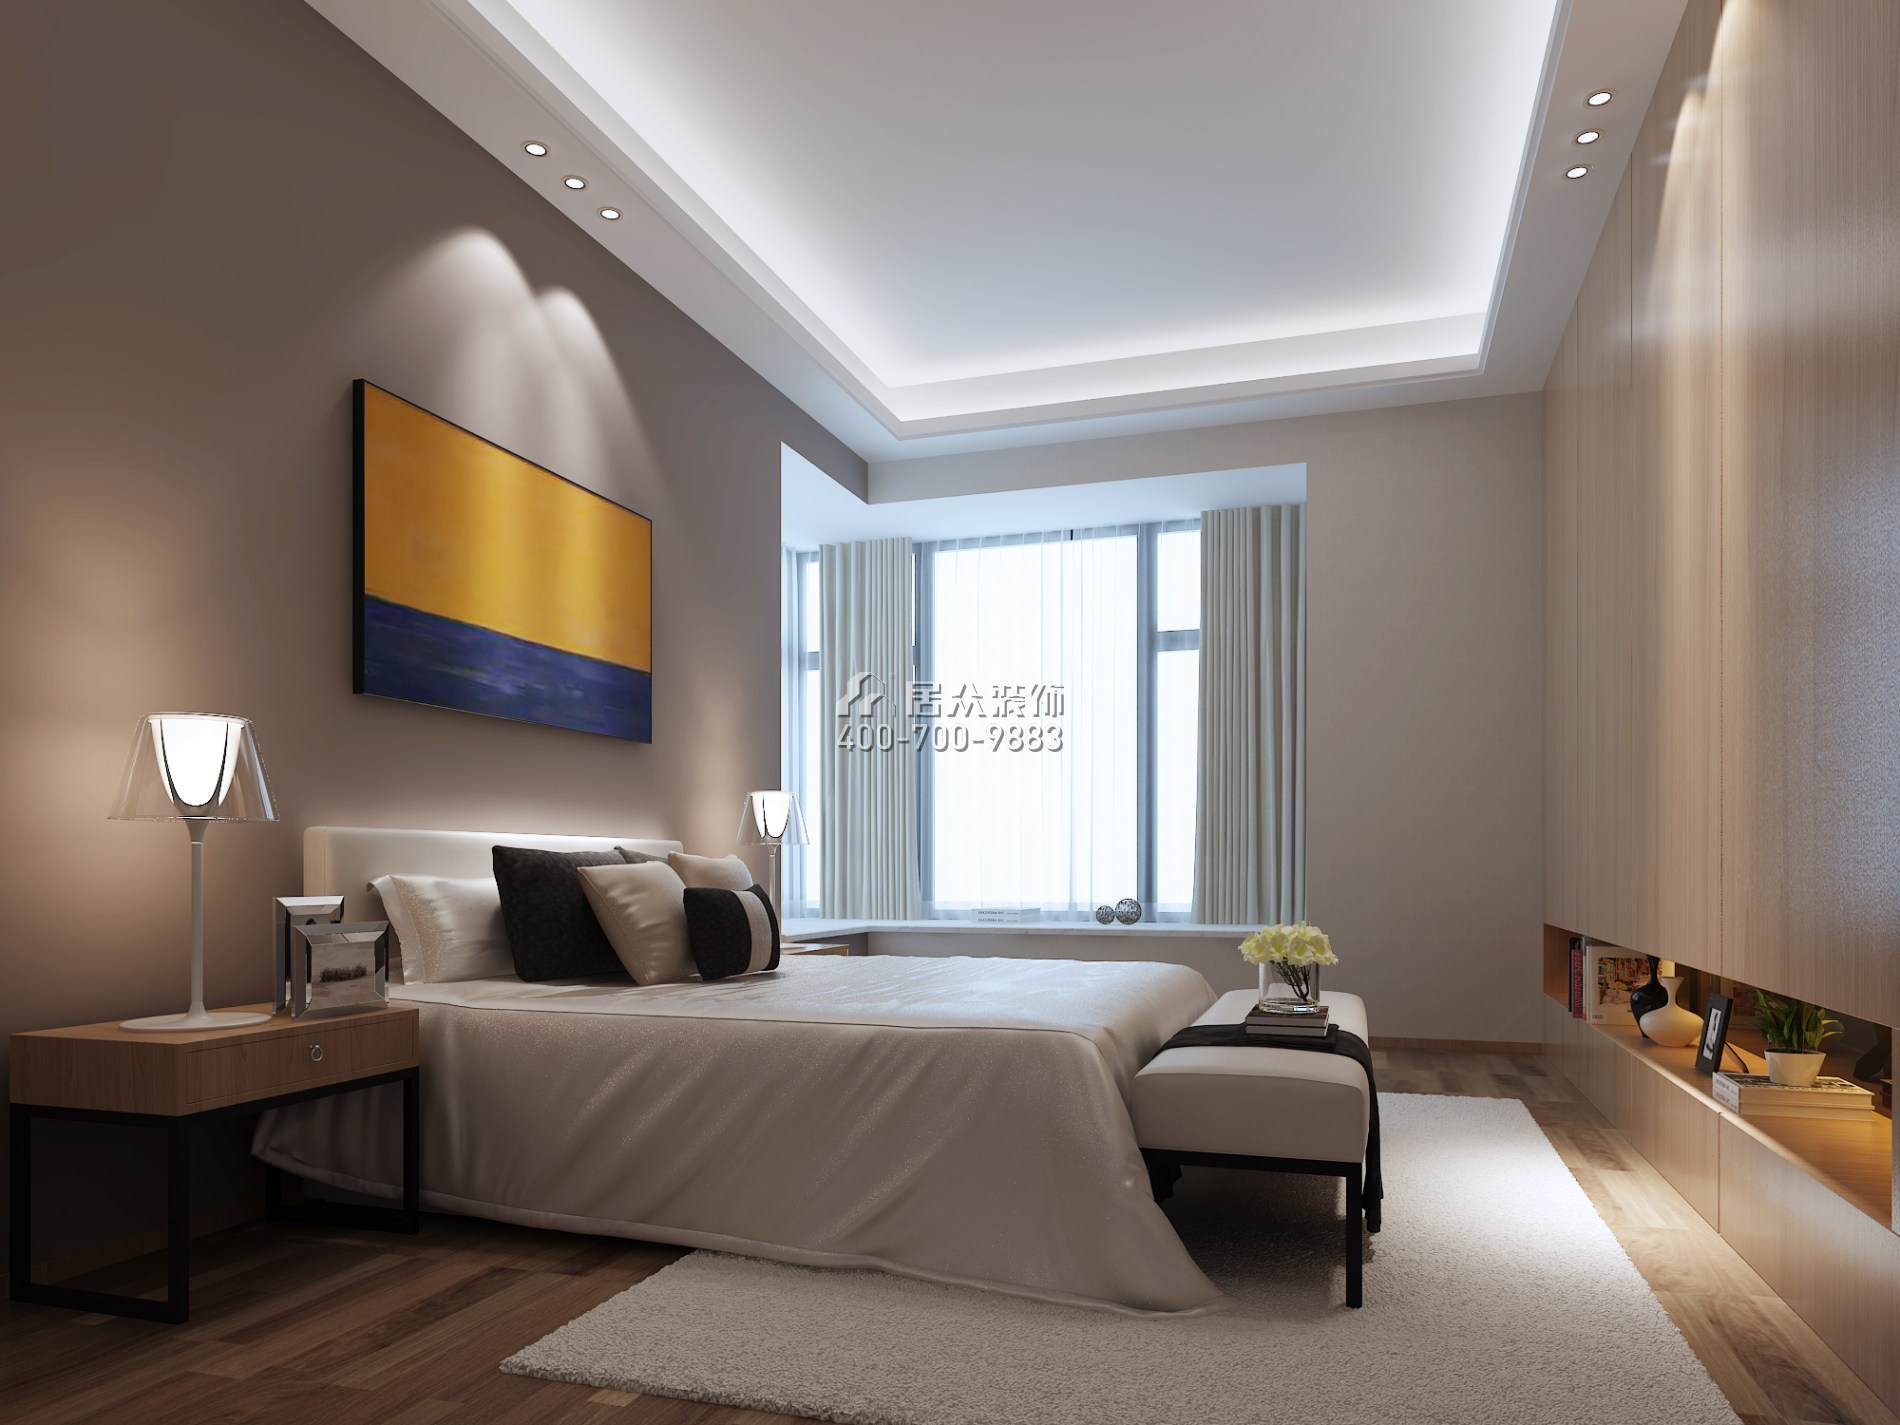 雅居乐富春山居182平方米现代简约风格平层户型卧室装修效果图